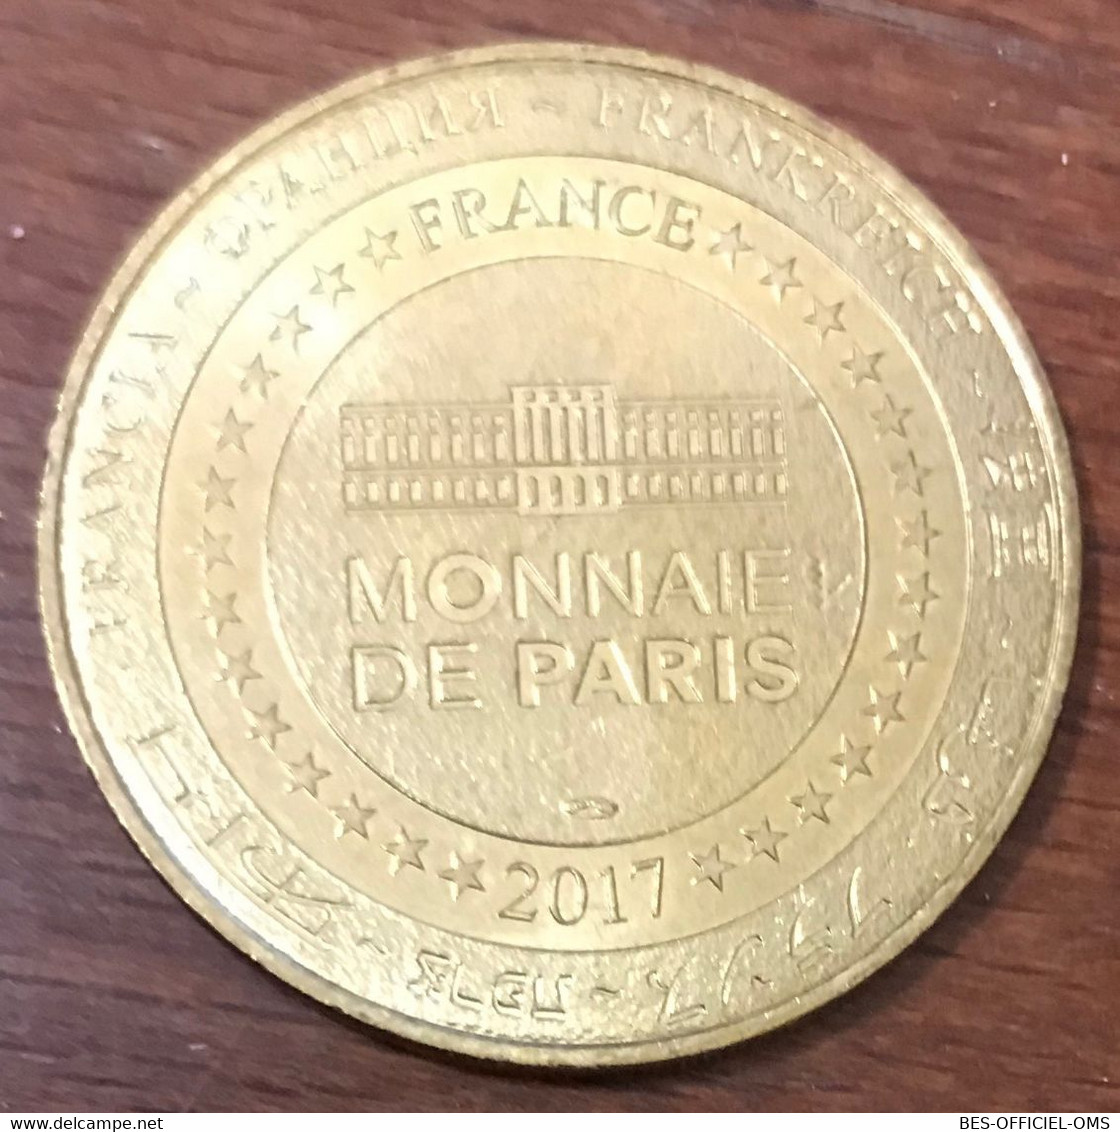 33 SAINT-ÉMILION L'ÉGLISE MDP 2017 MÉDAILLE SOUVENIR MONNAIE DE PARIS JETON TOURISTIQUE MEDALS COINS TOKENS - 2017